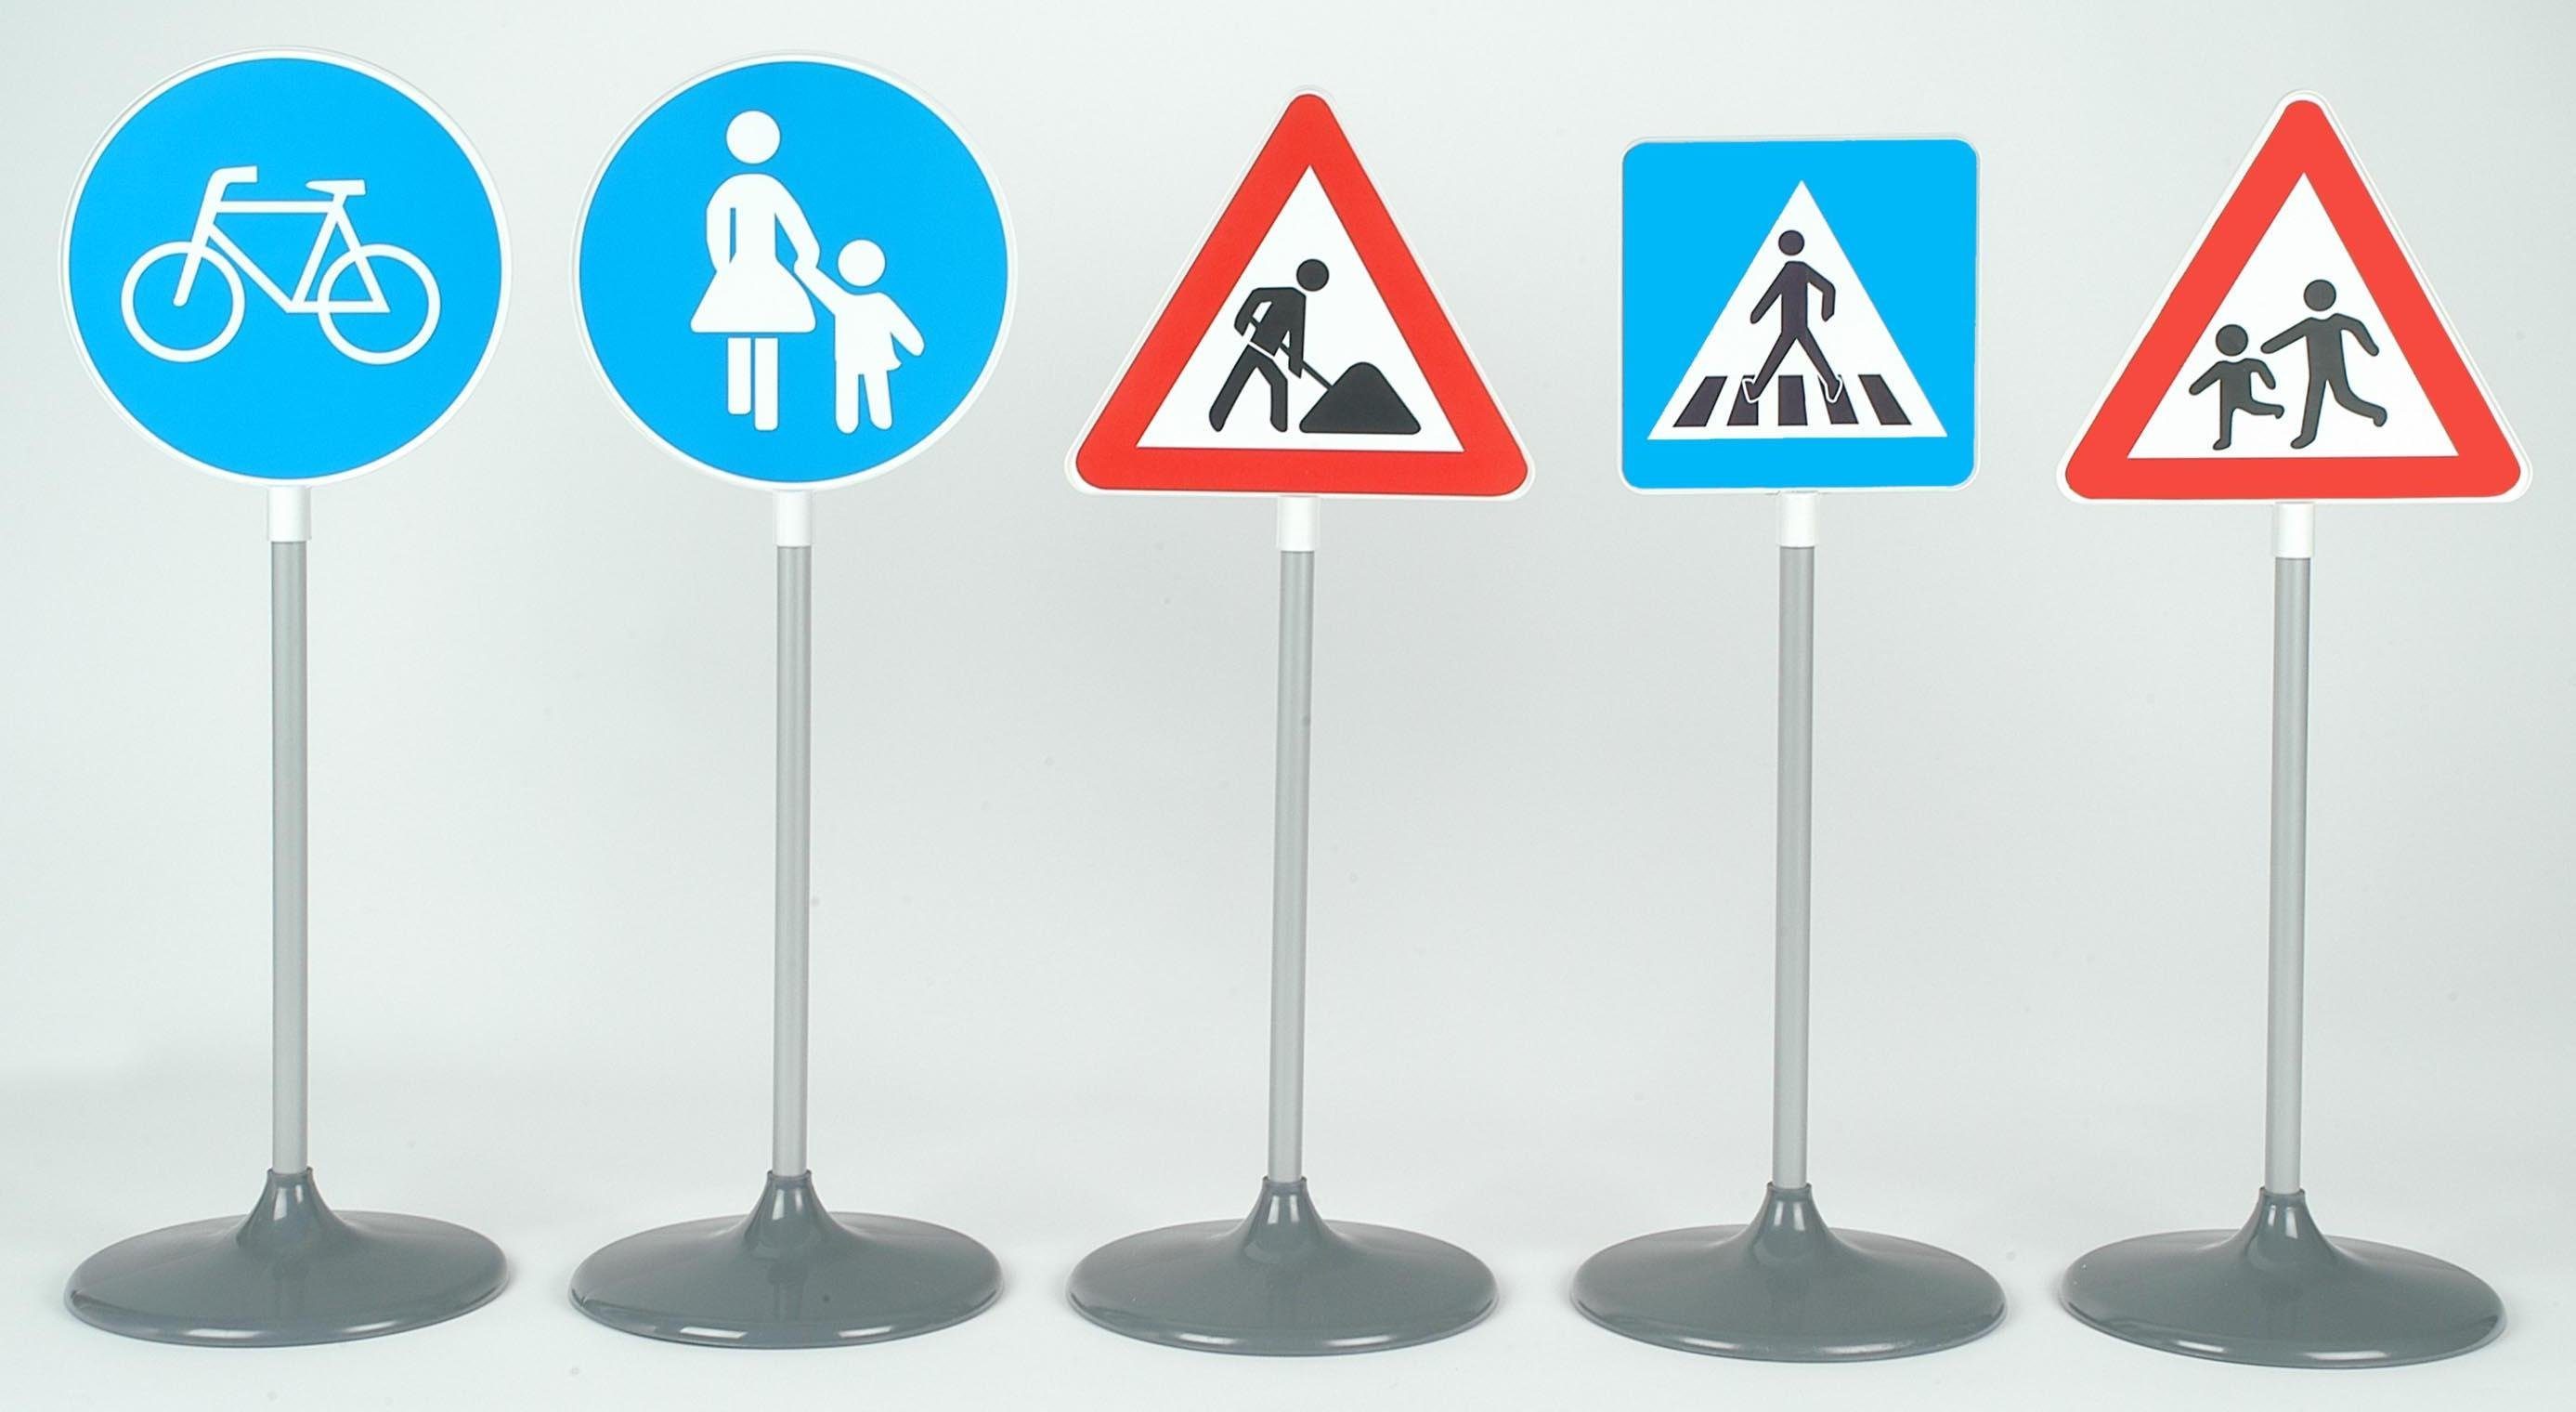 5-teiliges Verkehrsschilder SET Kinder Verkehrszeichen